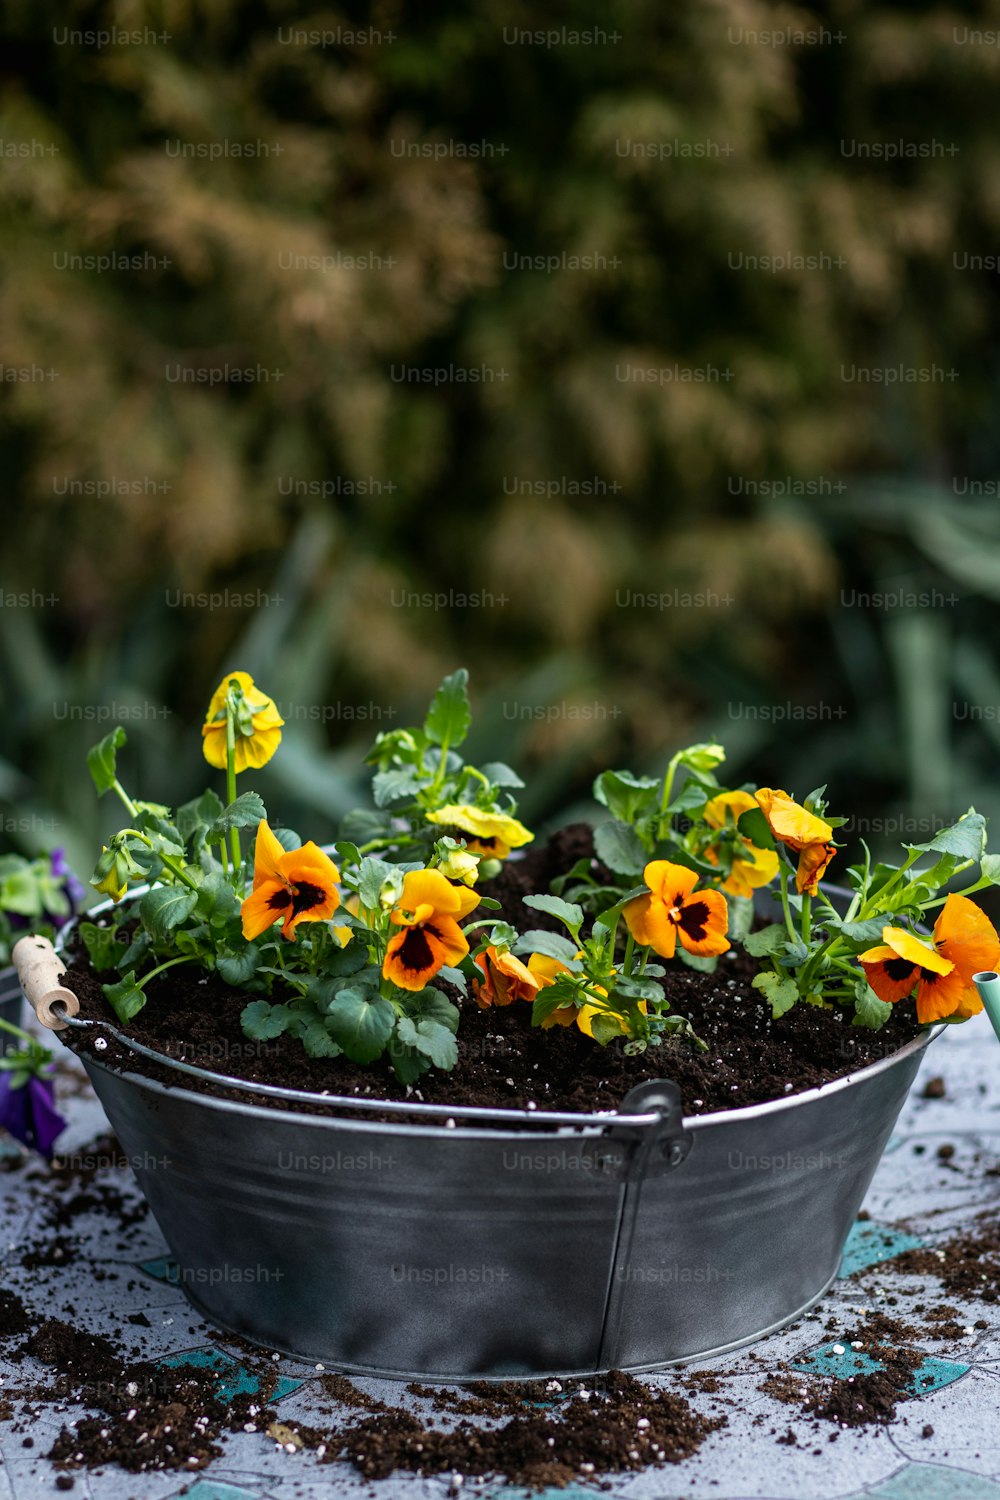 una planta en maceta con flores amarillas y naranjas